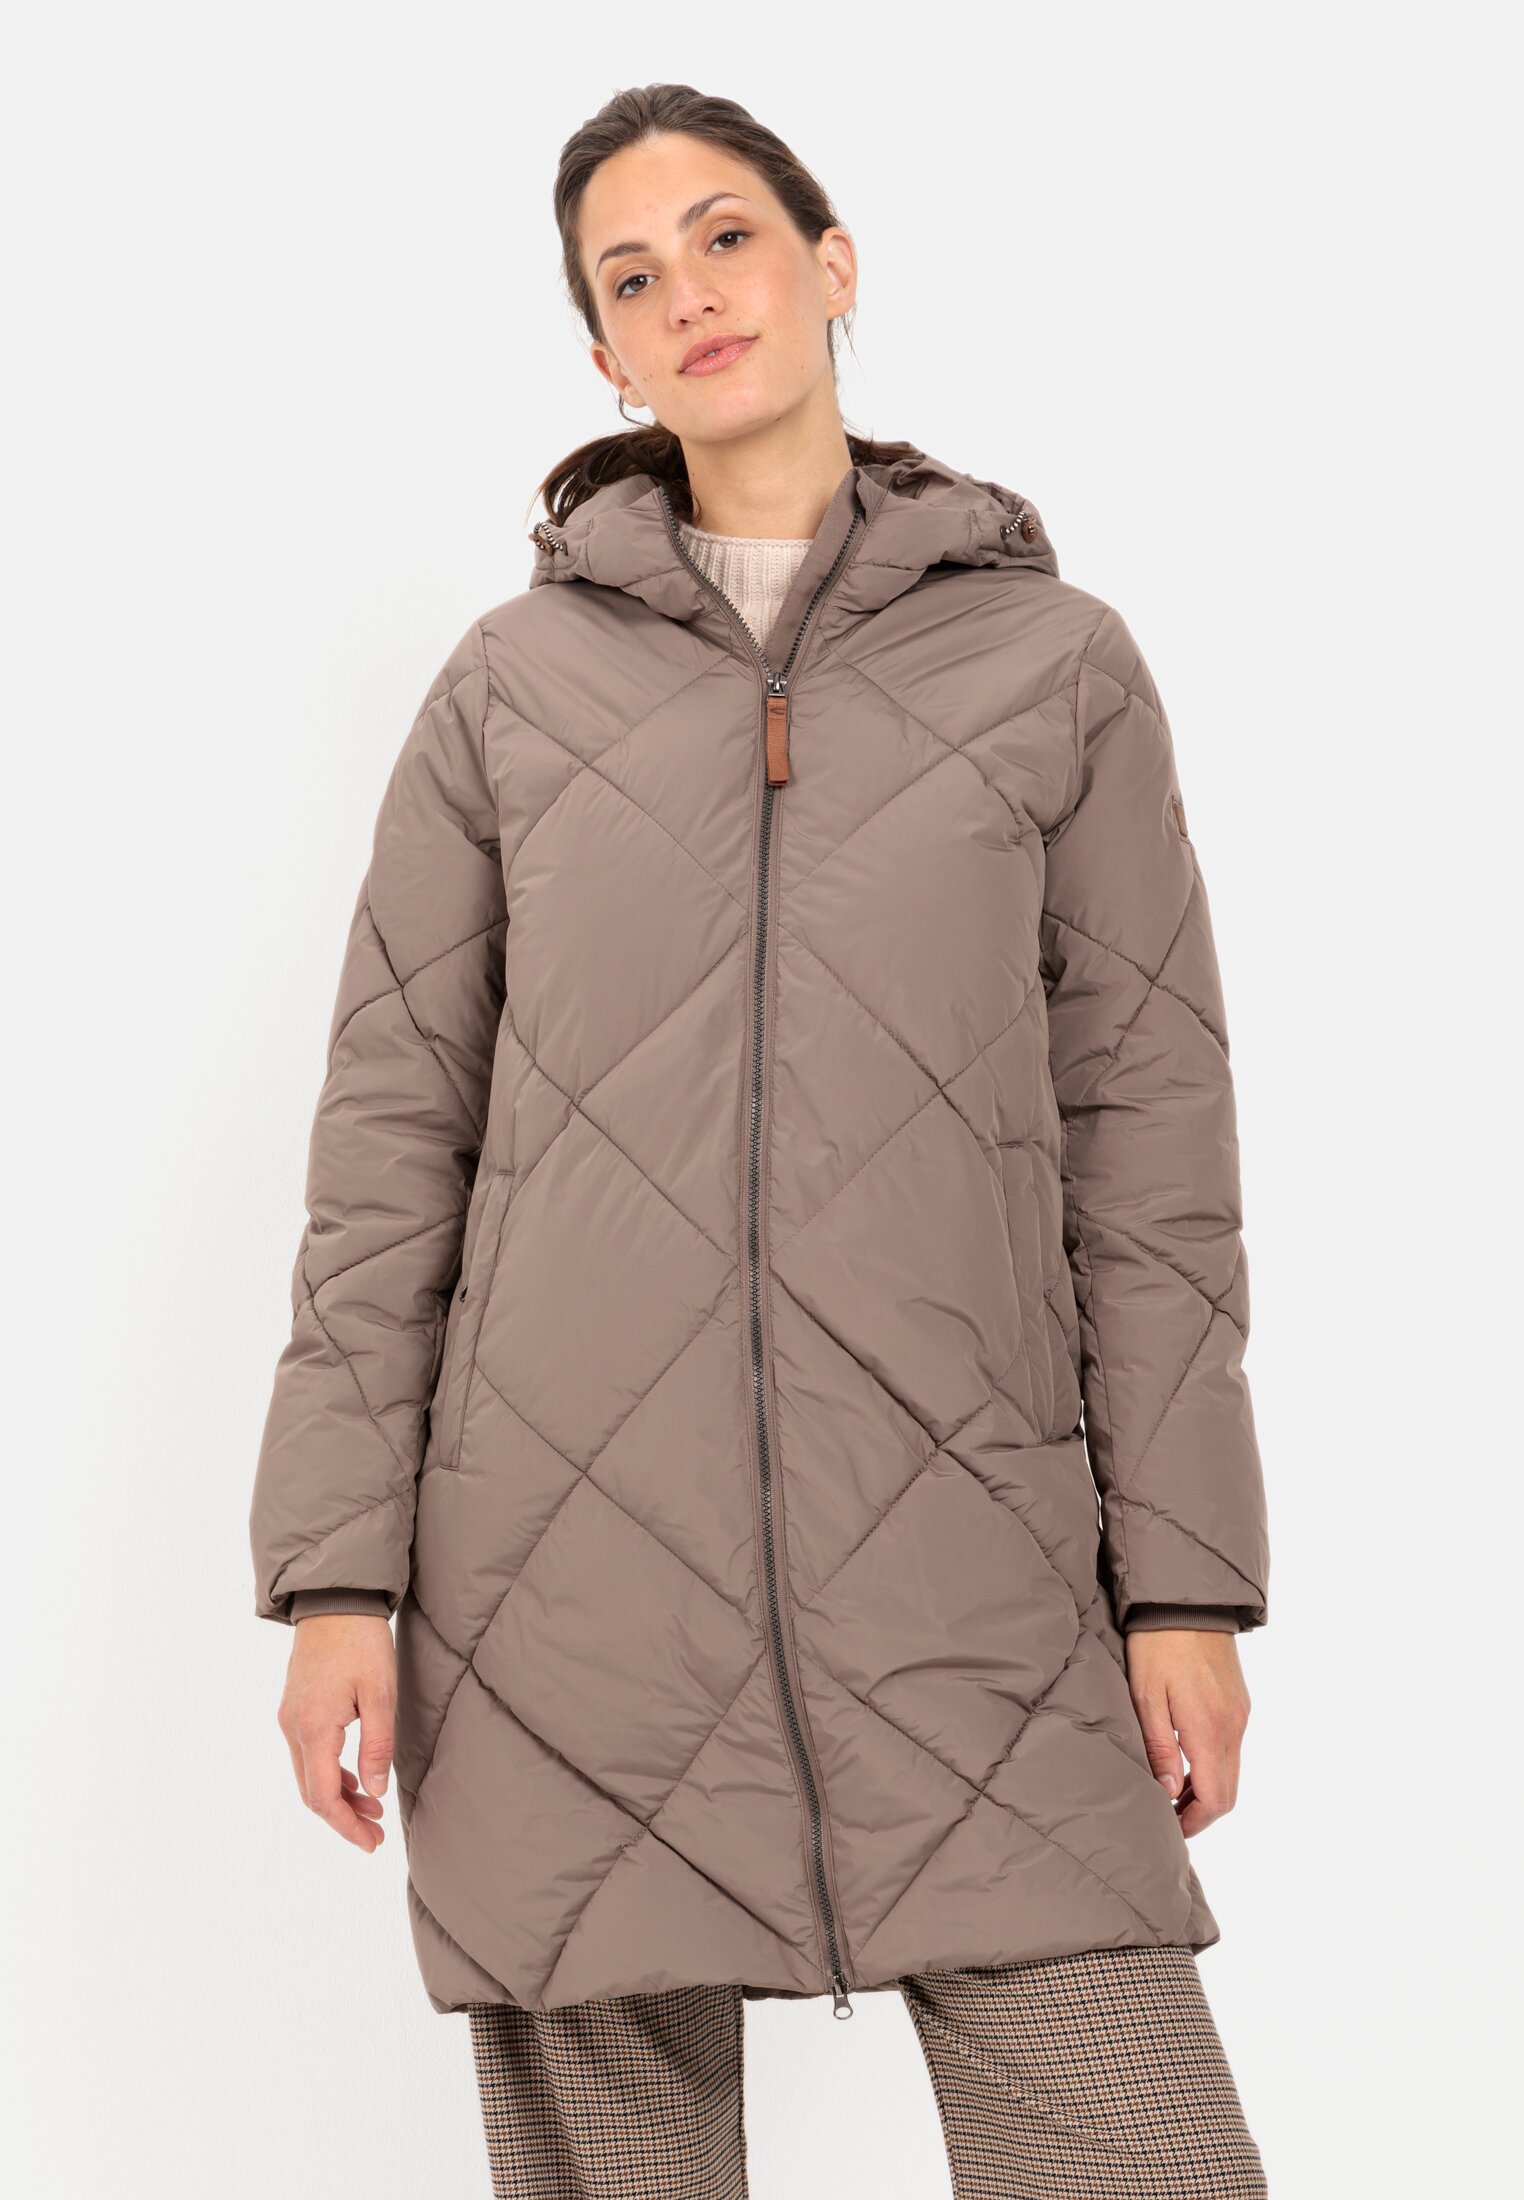 Women's winter jackets online